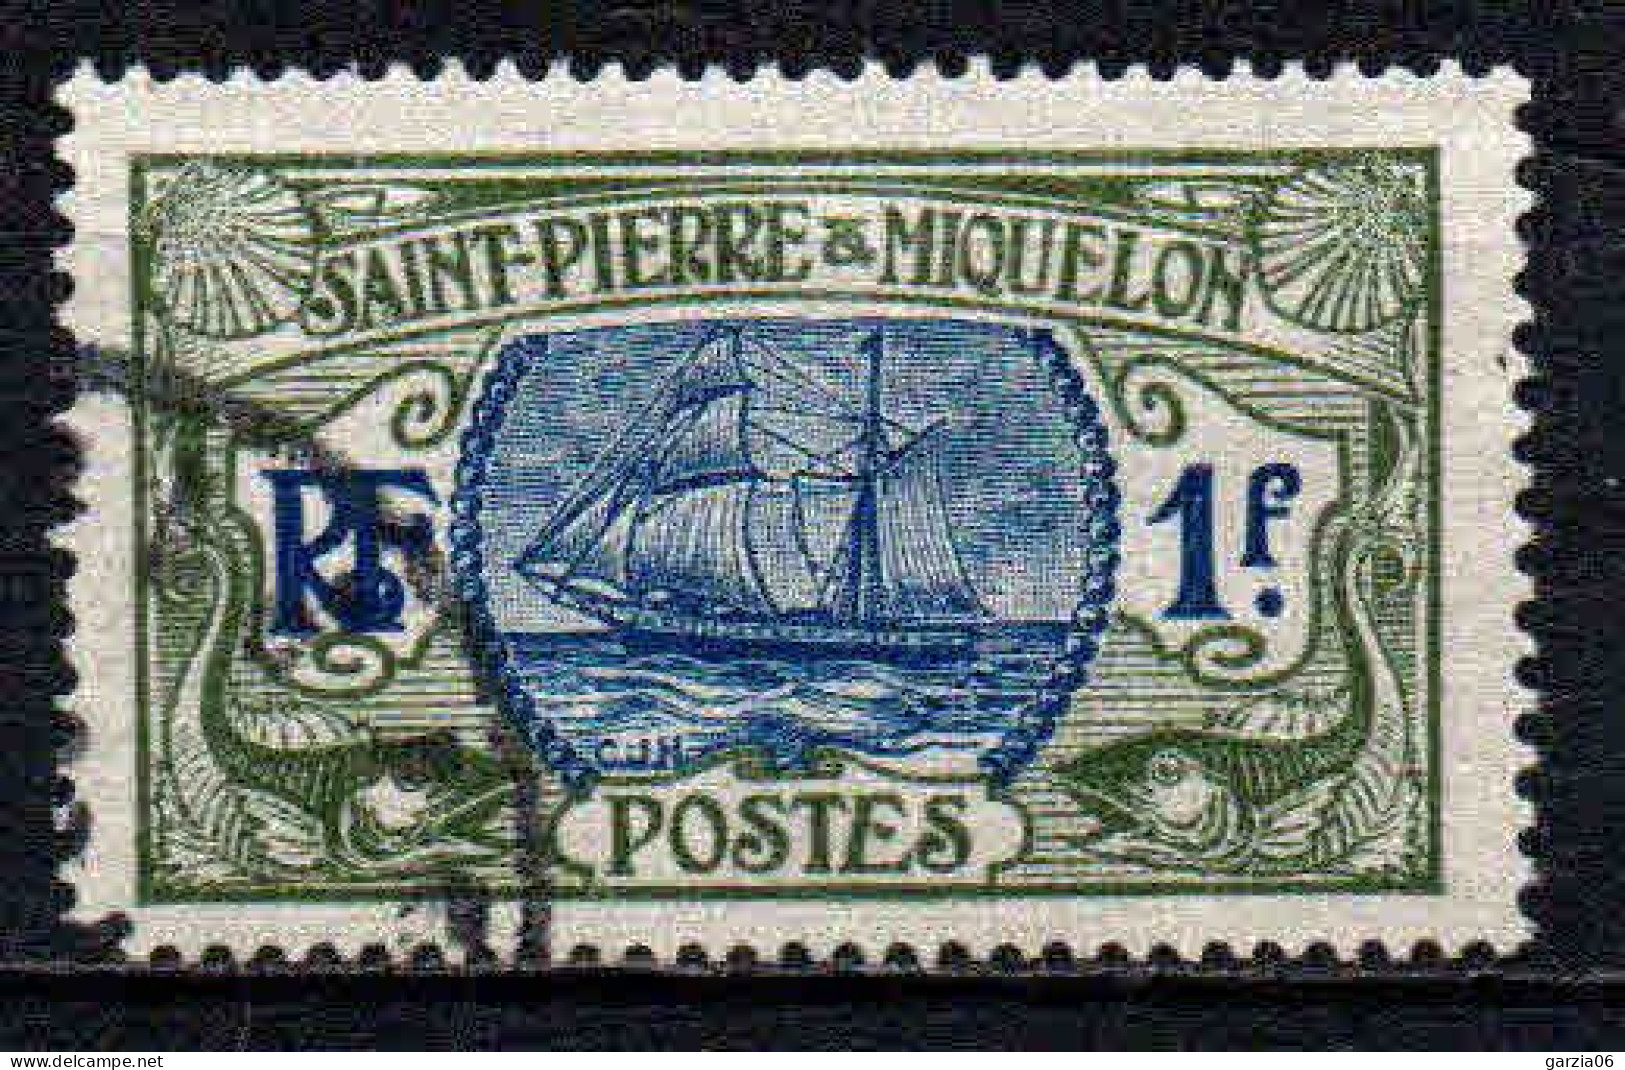 St Pierre Et Miquelon    - 1909 - Bateau De Pèche   - N° 91 - Oblit - Used - Used Stamps